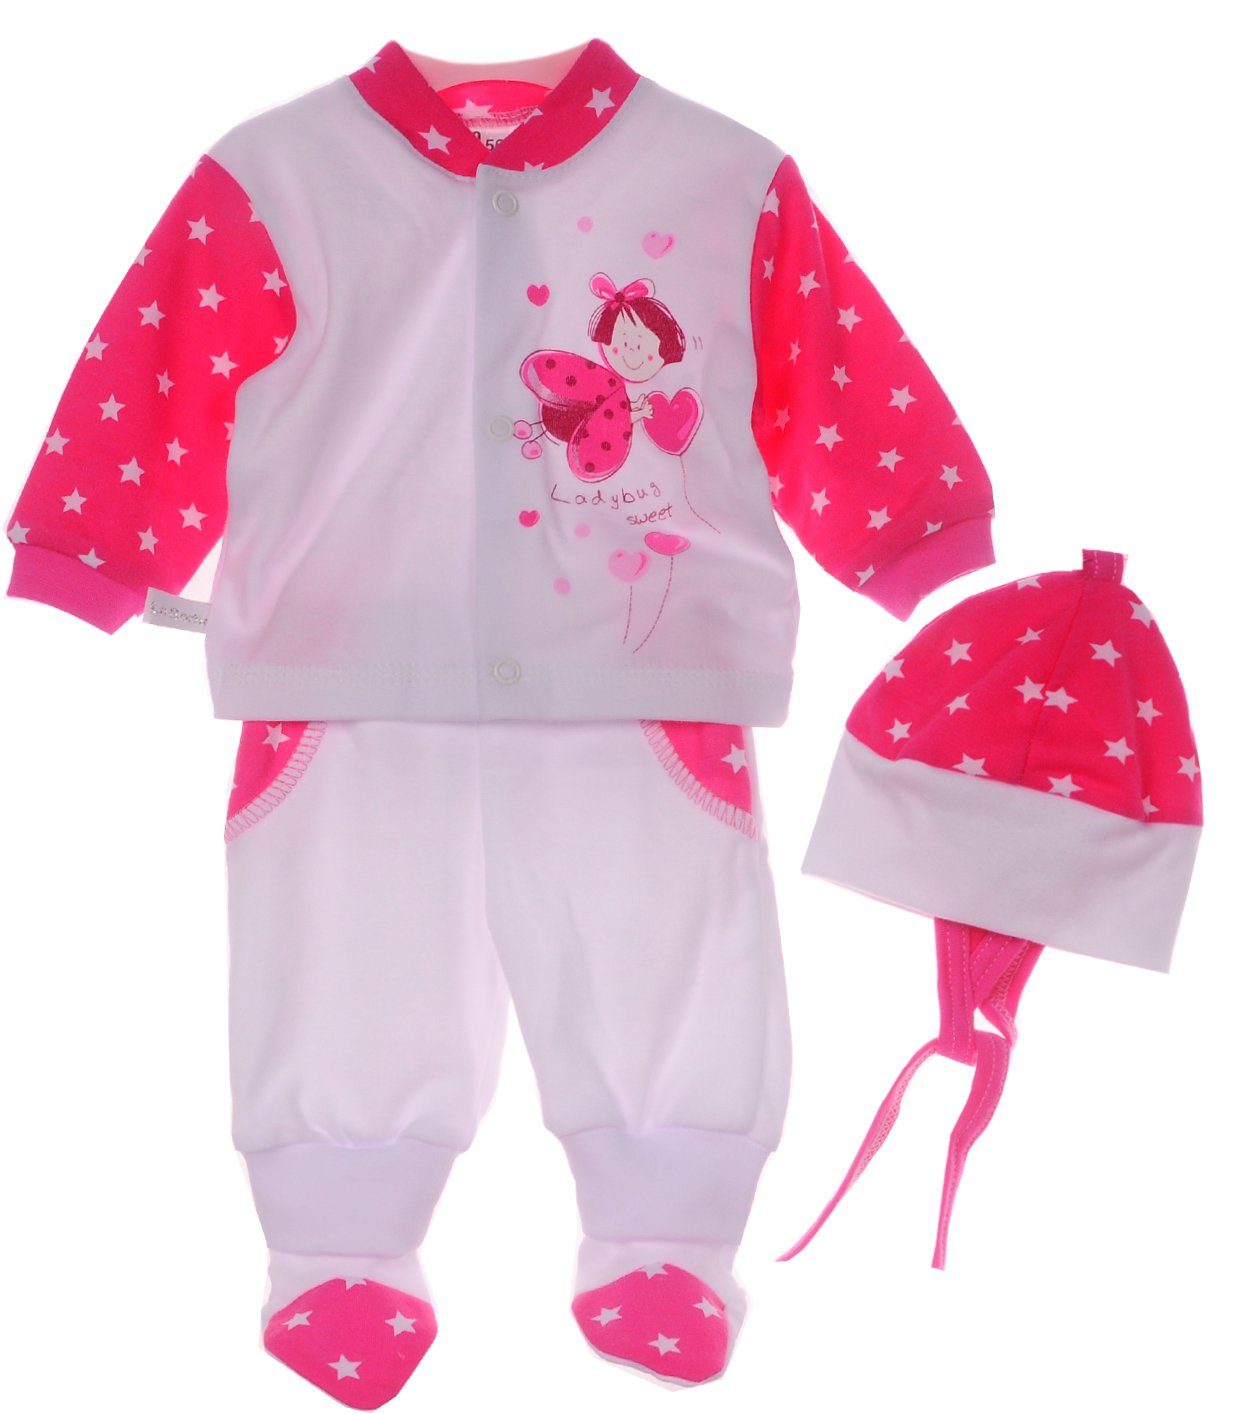 La Bortini Erstausstattungspaket Baby Anzug 3Tlg Hemdchen Hose Mütze 44 50 56 62 68